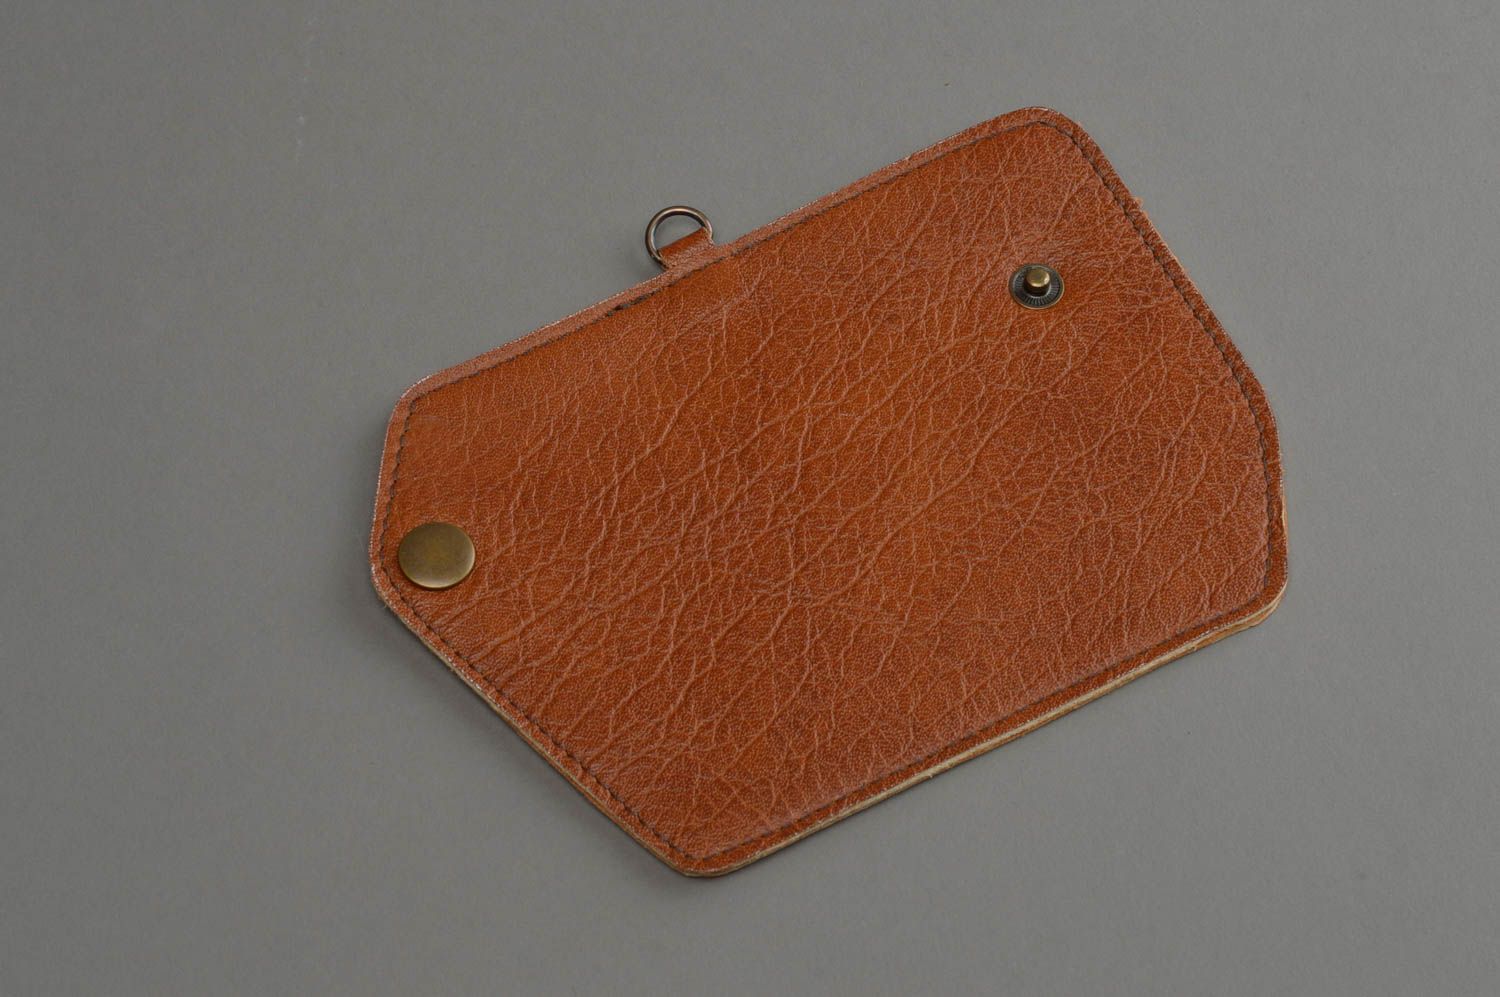 Unusual handmade leather key case unisex key case leather goods gift ideas photo 3